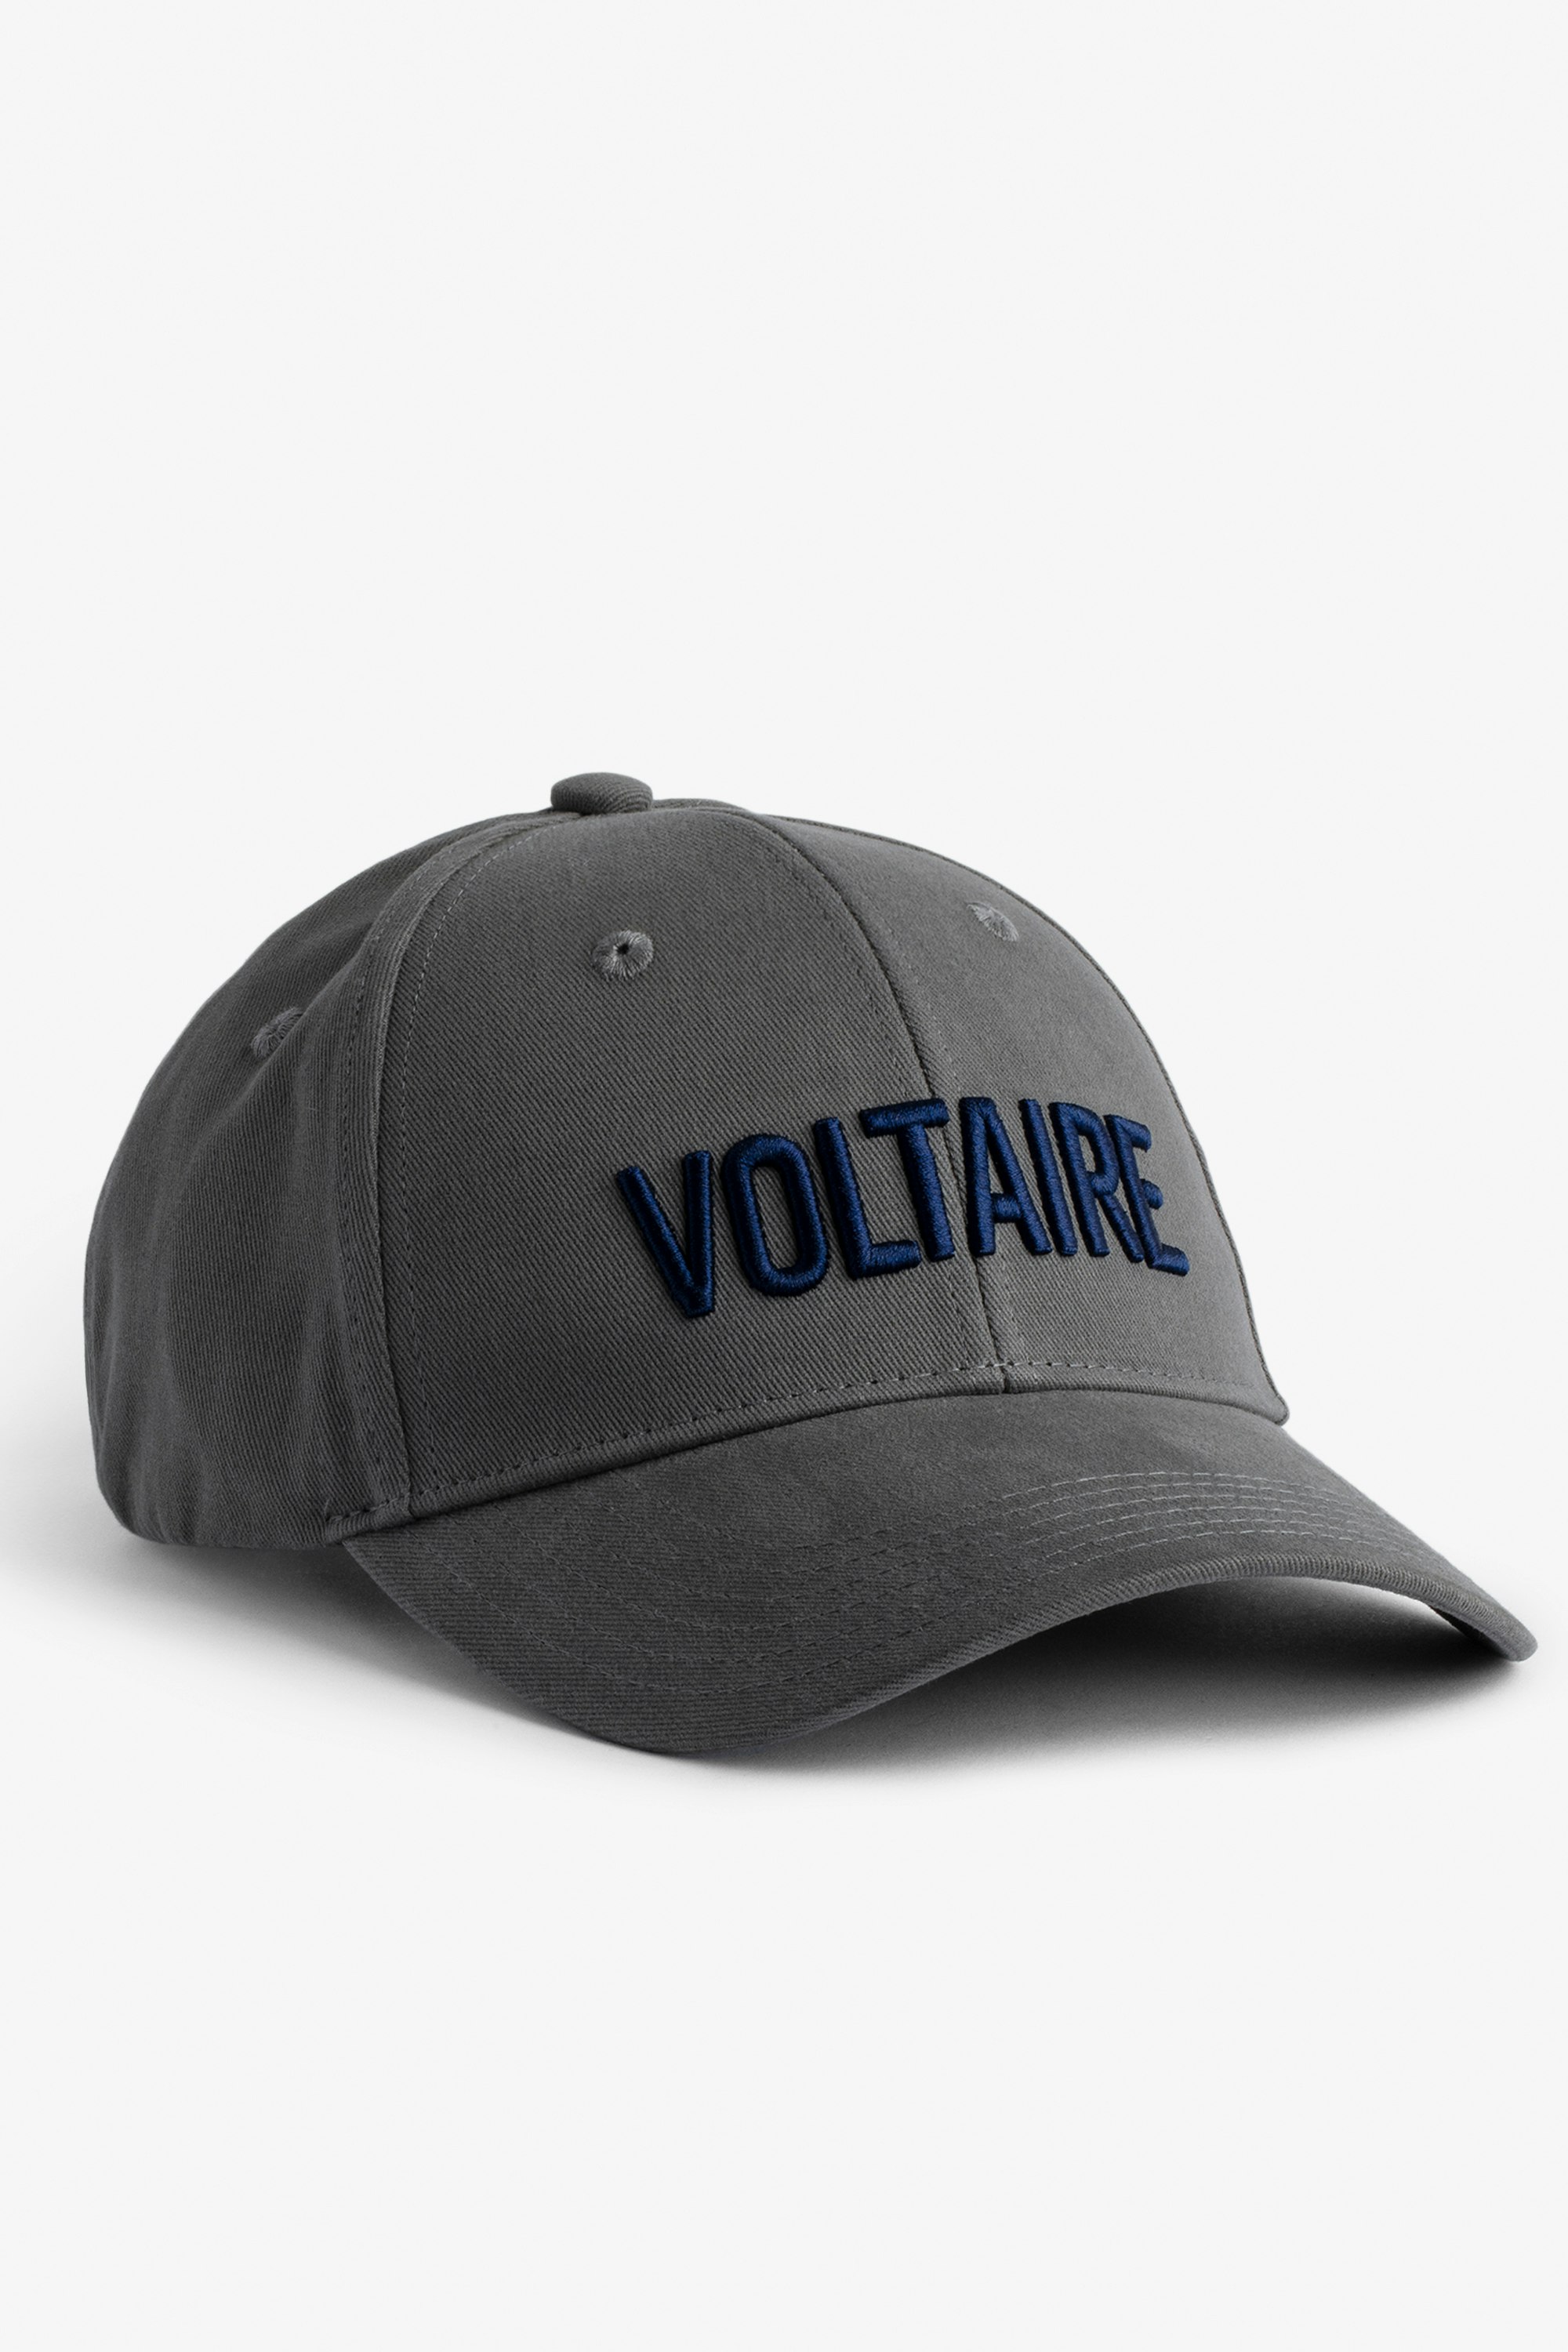 Schirmmütze Klelia Voltaire Mit „Voltaire“ bestickte Herren-Schirmmütze aus grauer Baumwolle